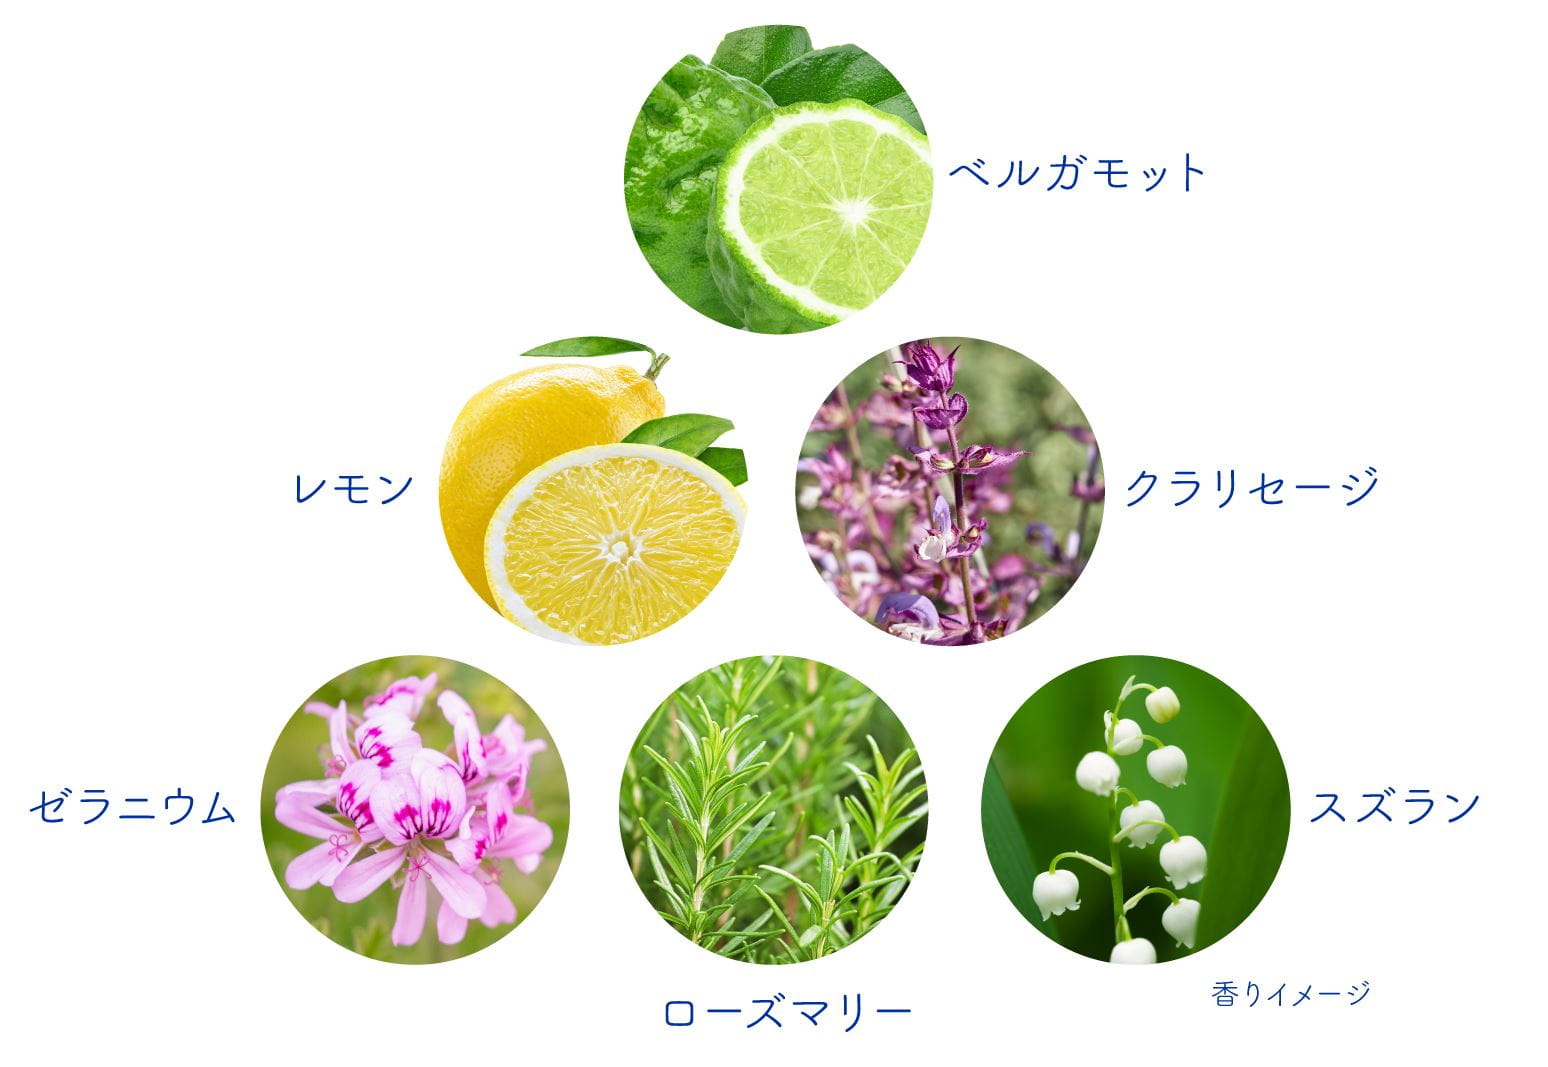 香りのイメージとなる草花の図。ベルガモット、レモン、クラリセージ、ゼラニウム、ローズマリー、スズランをイメージ。